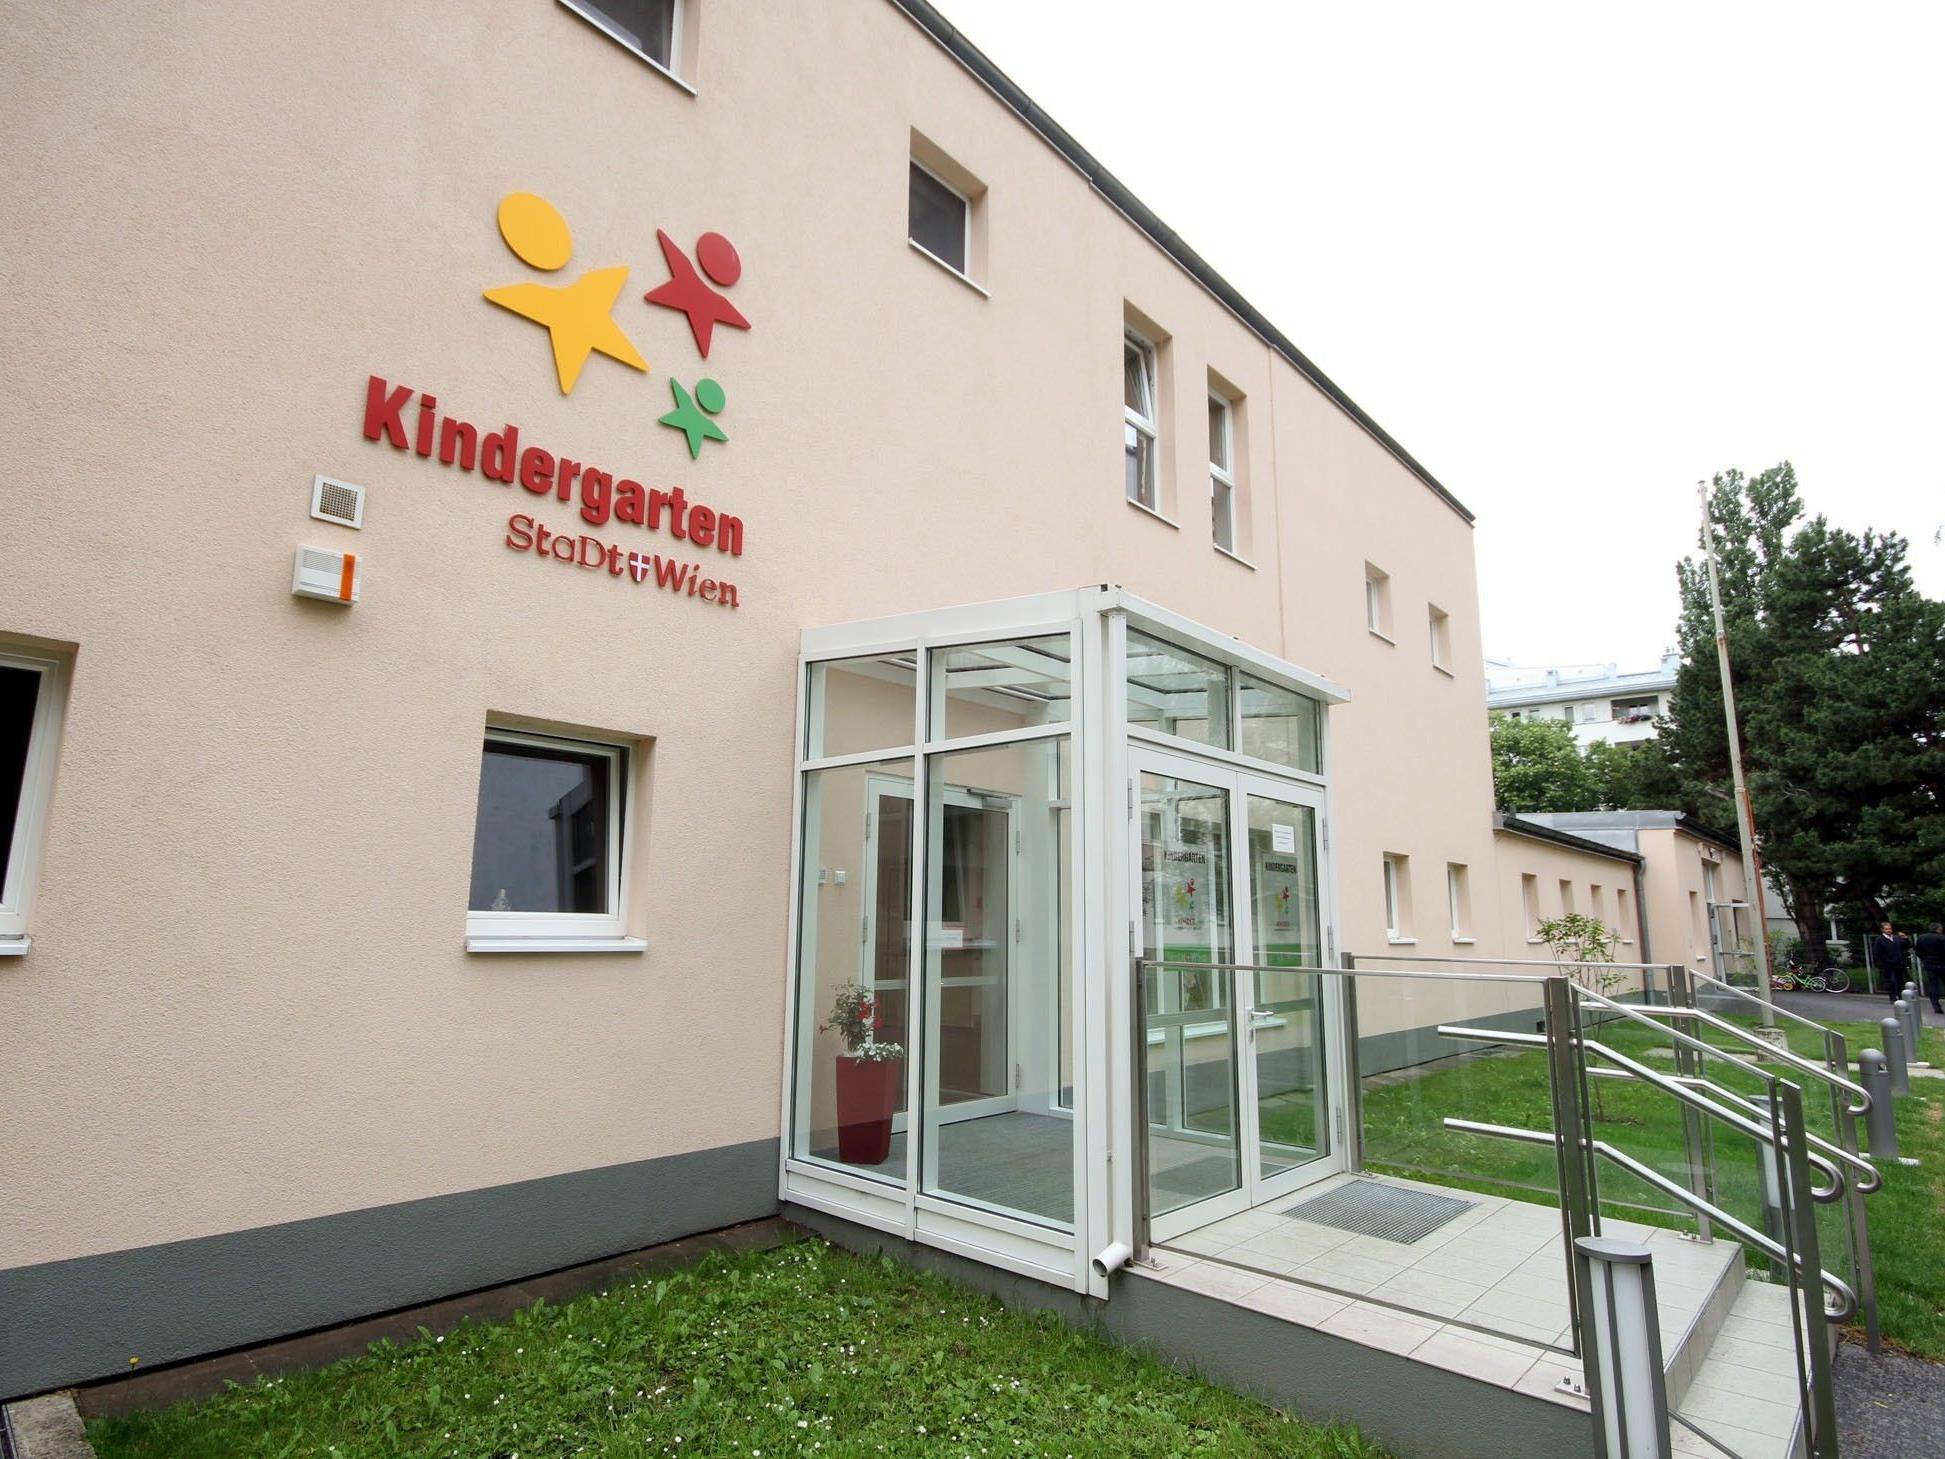 50 Jahre alter Kindergarten in Brigittenau erstrahlt in neuem Glanz